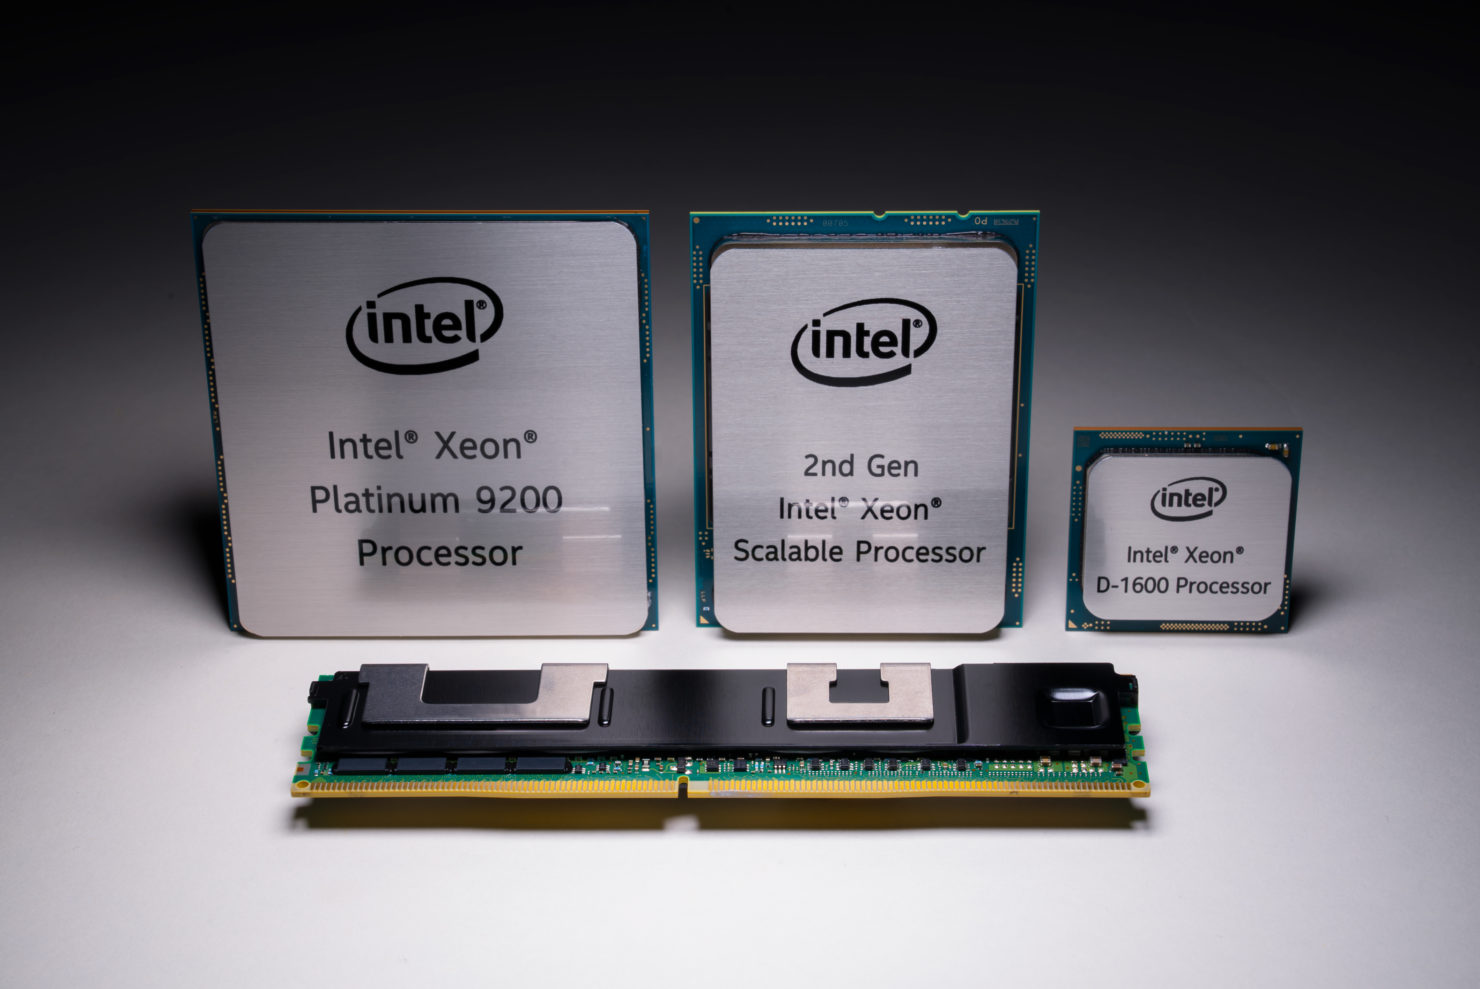 56 rdzeni i 112 wątków w serwerowych procesorach Intela – Xeon Platinum 9000